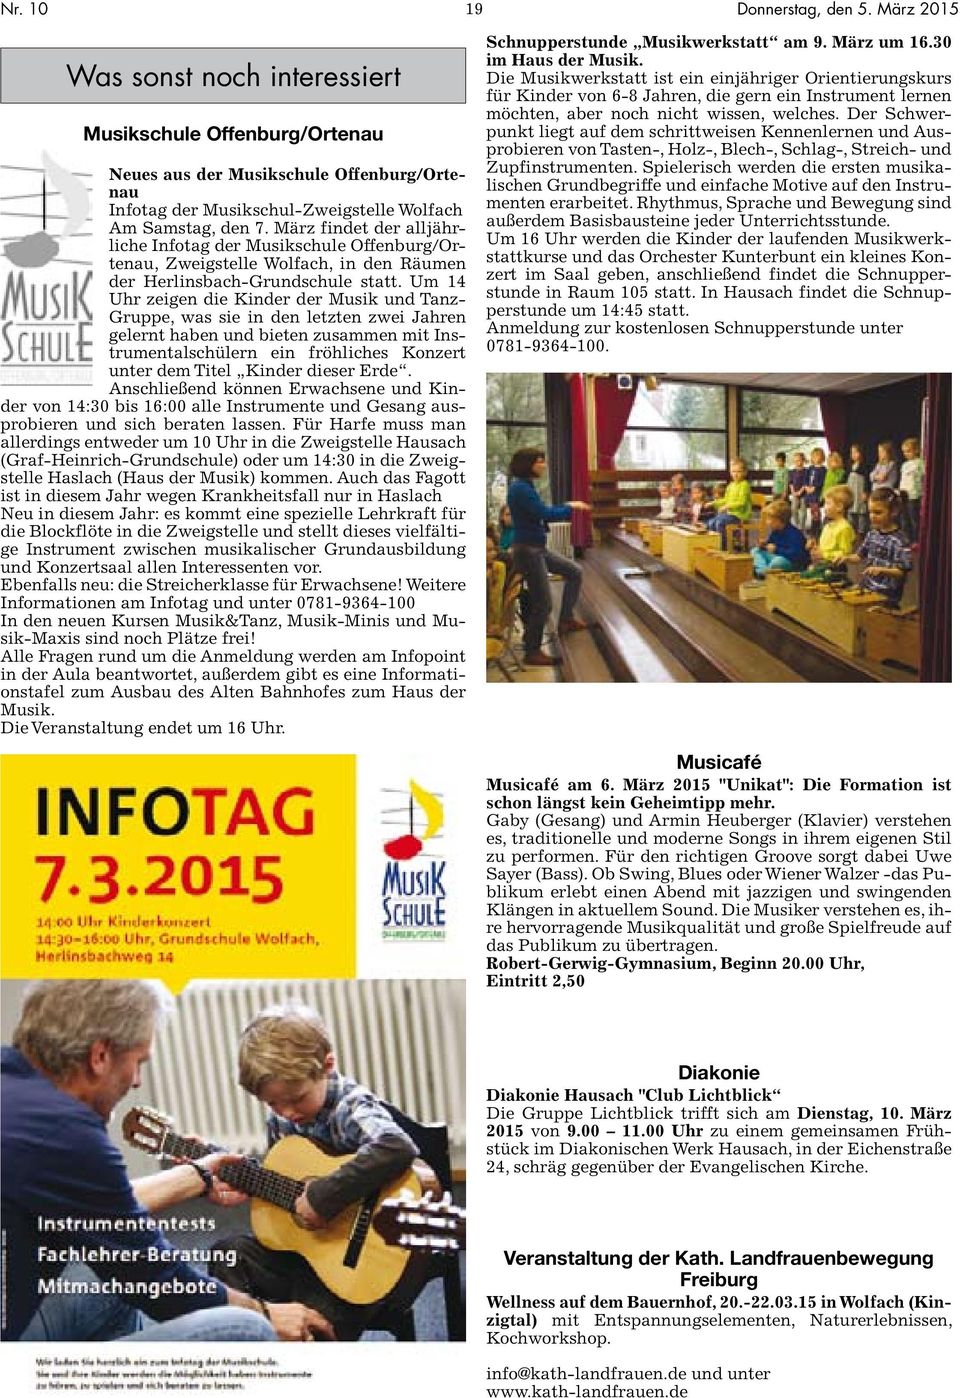 März findet der alljährliche Infotag der Musikschule Offenburg/Ortenau, Zweigstelle Wolfach, in den Räumen der Herlinsbach-Grundschule statt.